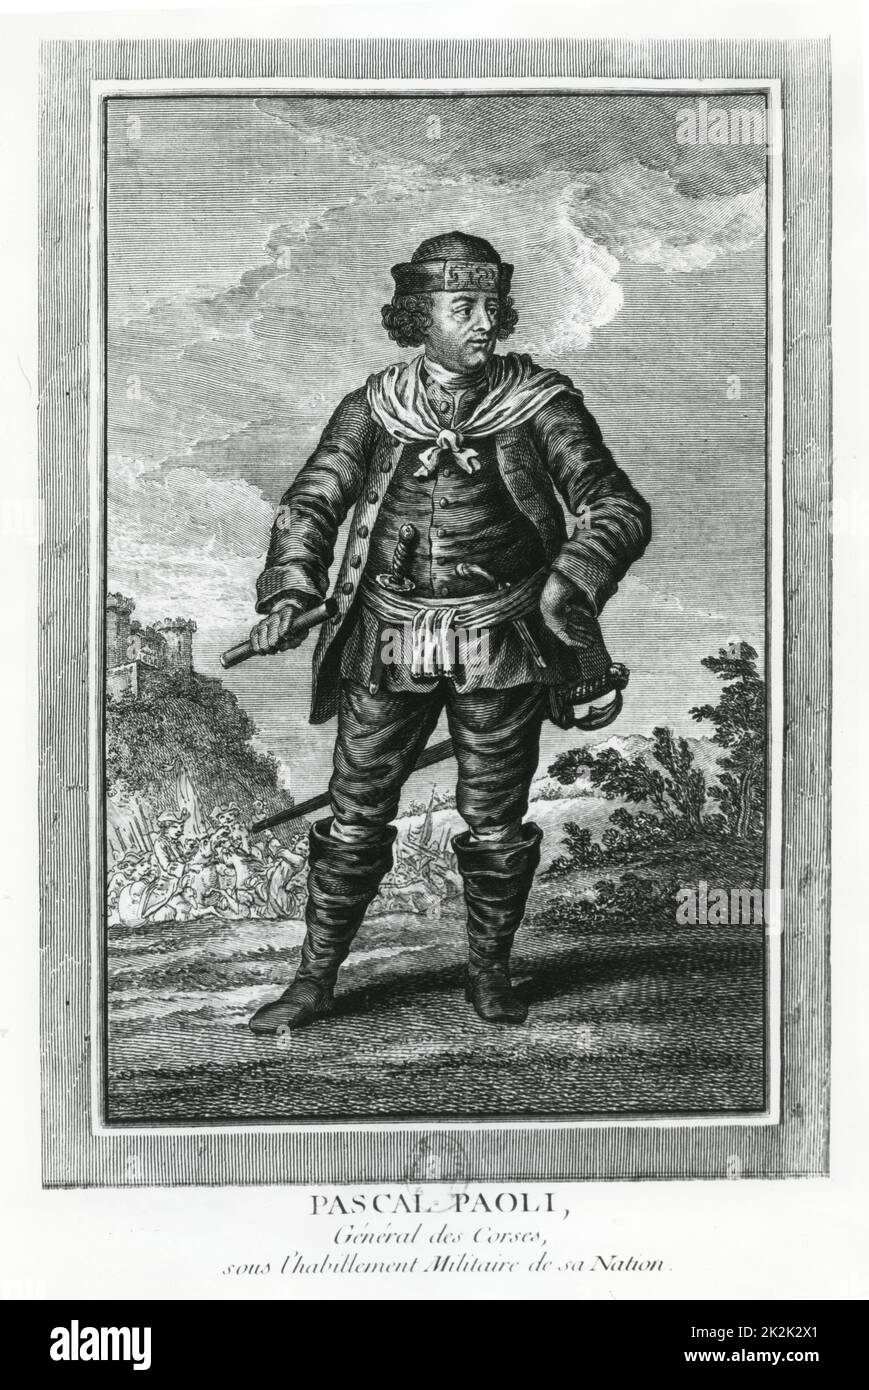 Ritratto di Pascal Paoli, generale della Corsica, indossando l'uniforme militare indossata durante la guerra di indipendenza della Corsica. Incisione del 18th ° secolo Foto Stock